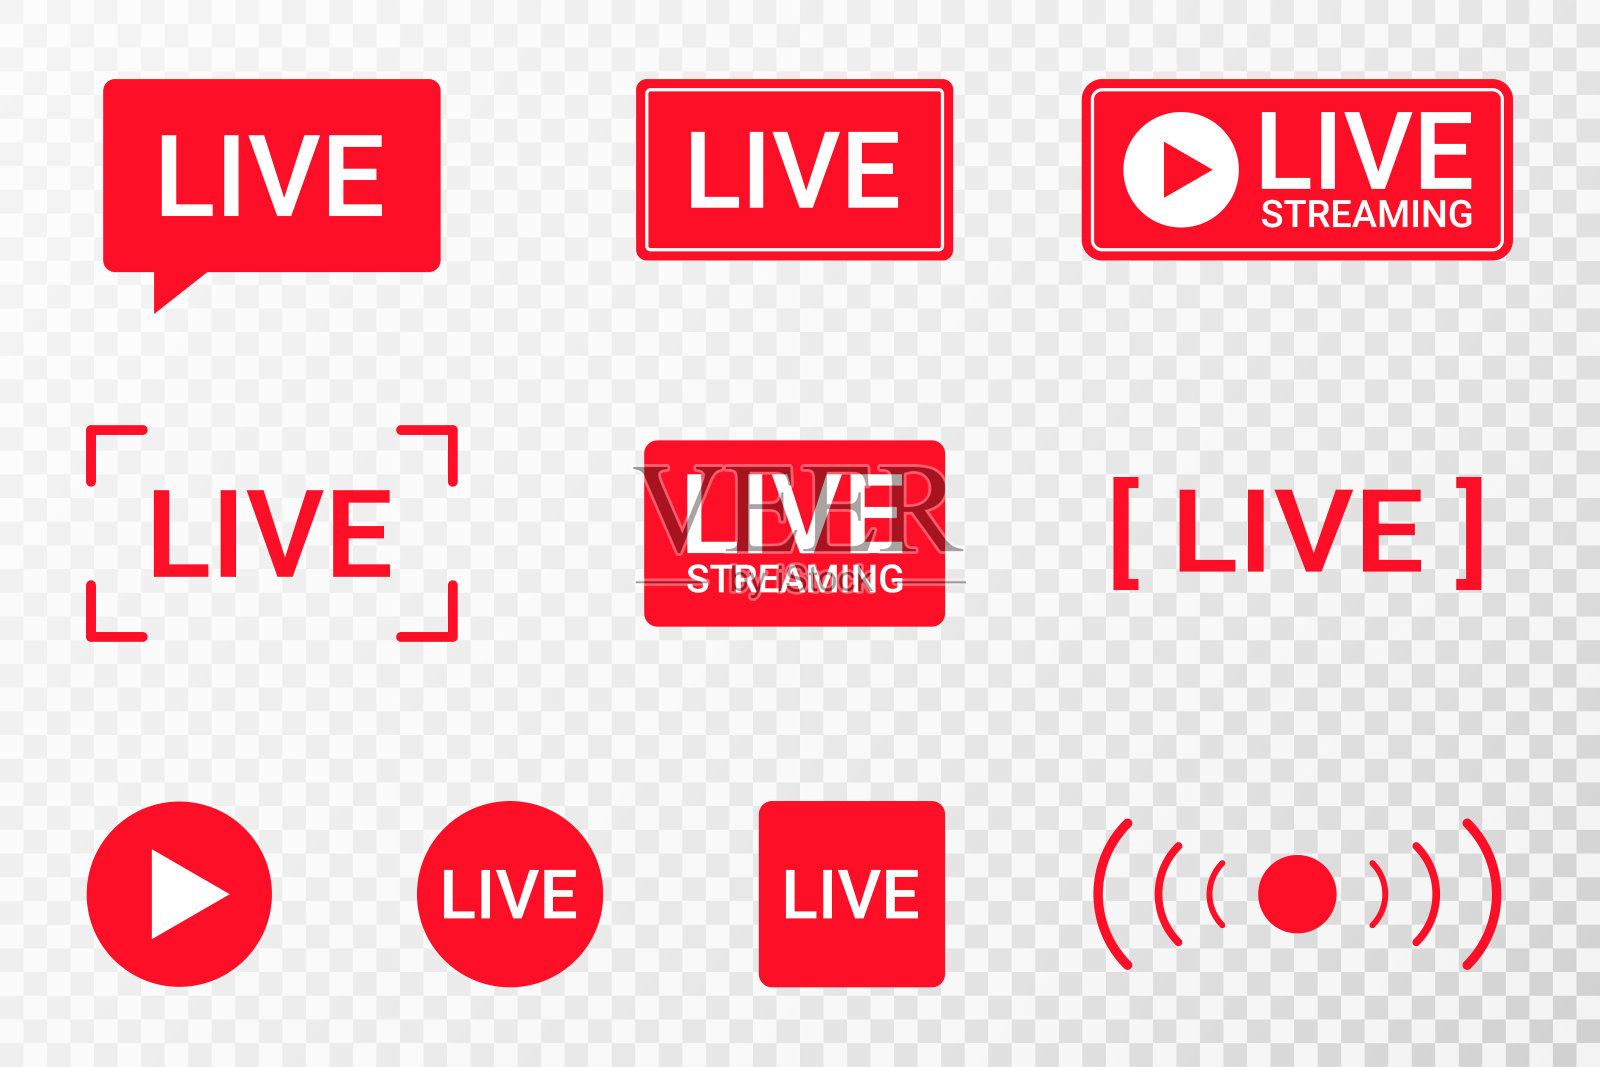 一组直播流媒体图标。直播、直播、在线直播的红色符号和按钮。较低的第三个模板为电视，节目，电影和现场表演插画图片素材